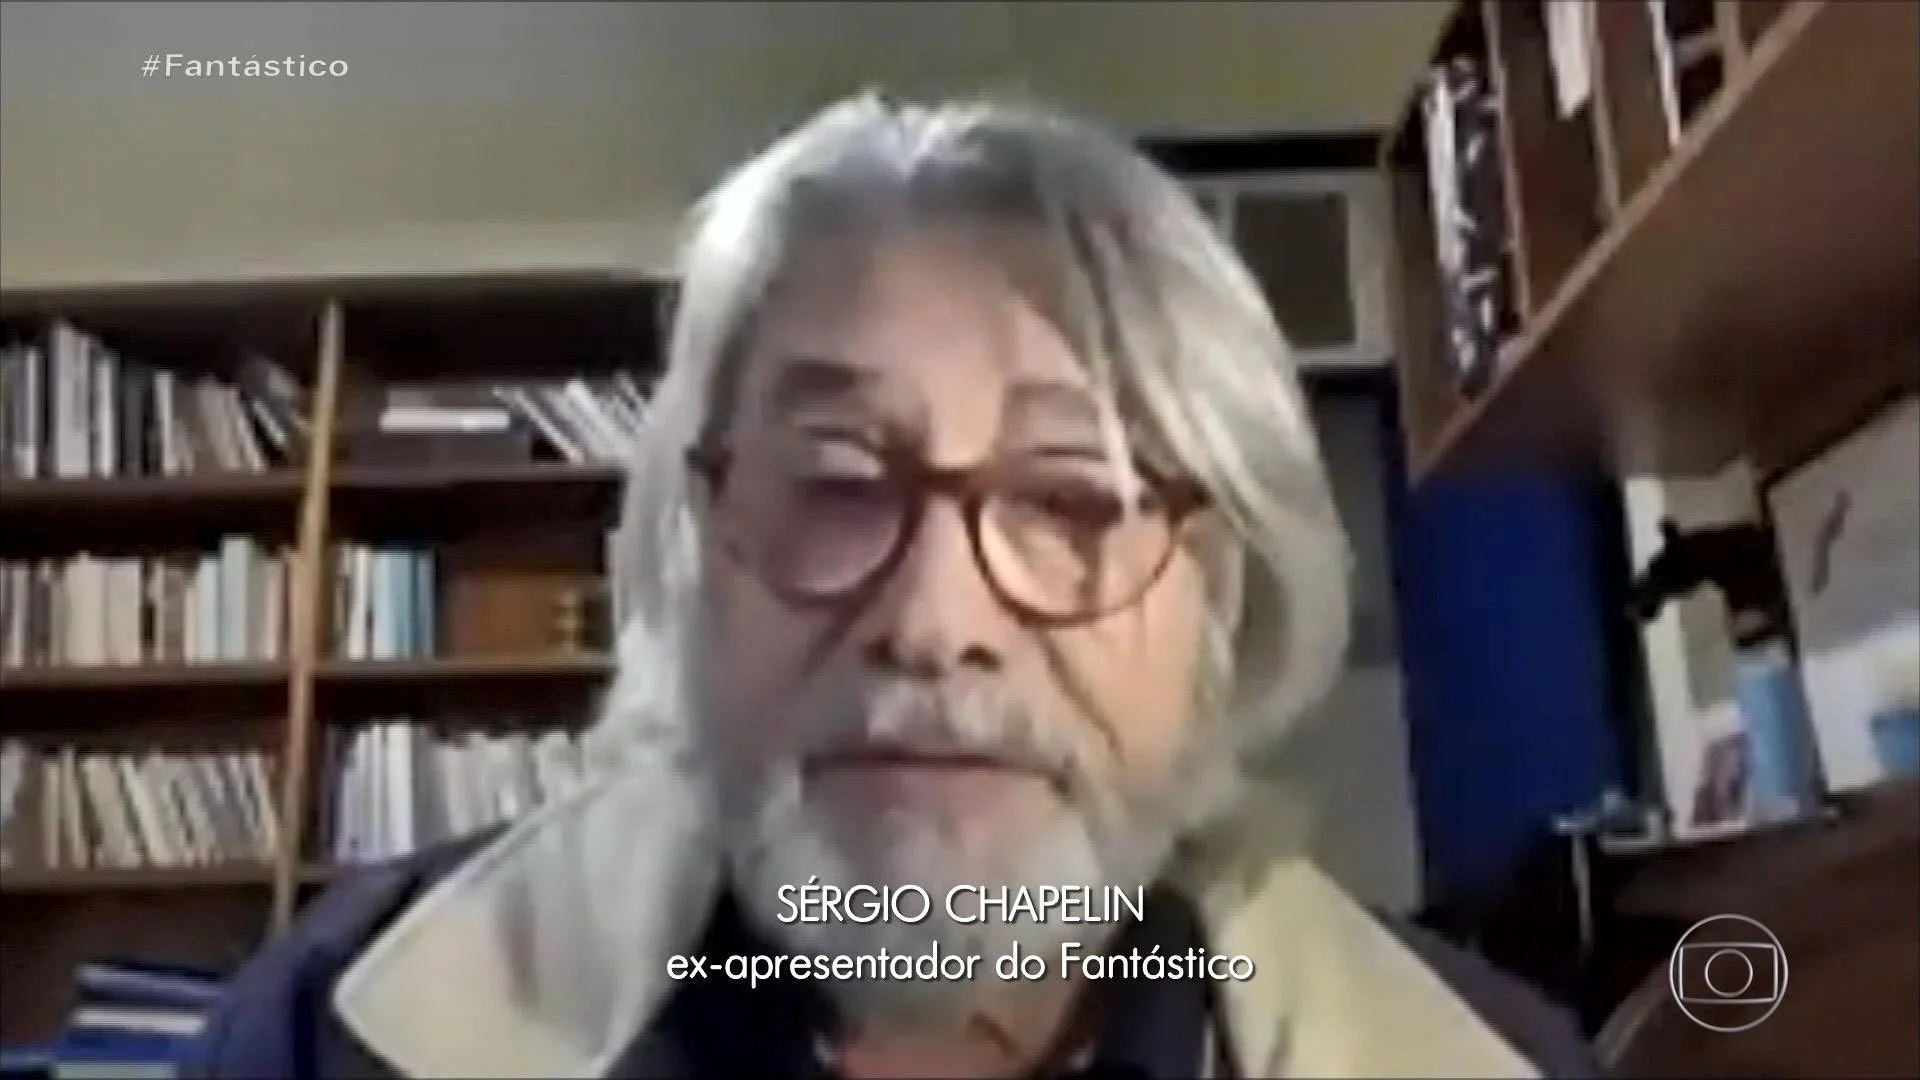 Sérgio Chapelin, ex apresentador do "Fantástico" da Globo (Foto Reprodução/Internet)